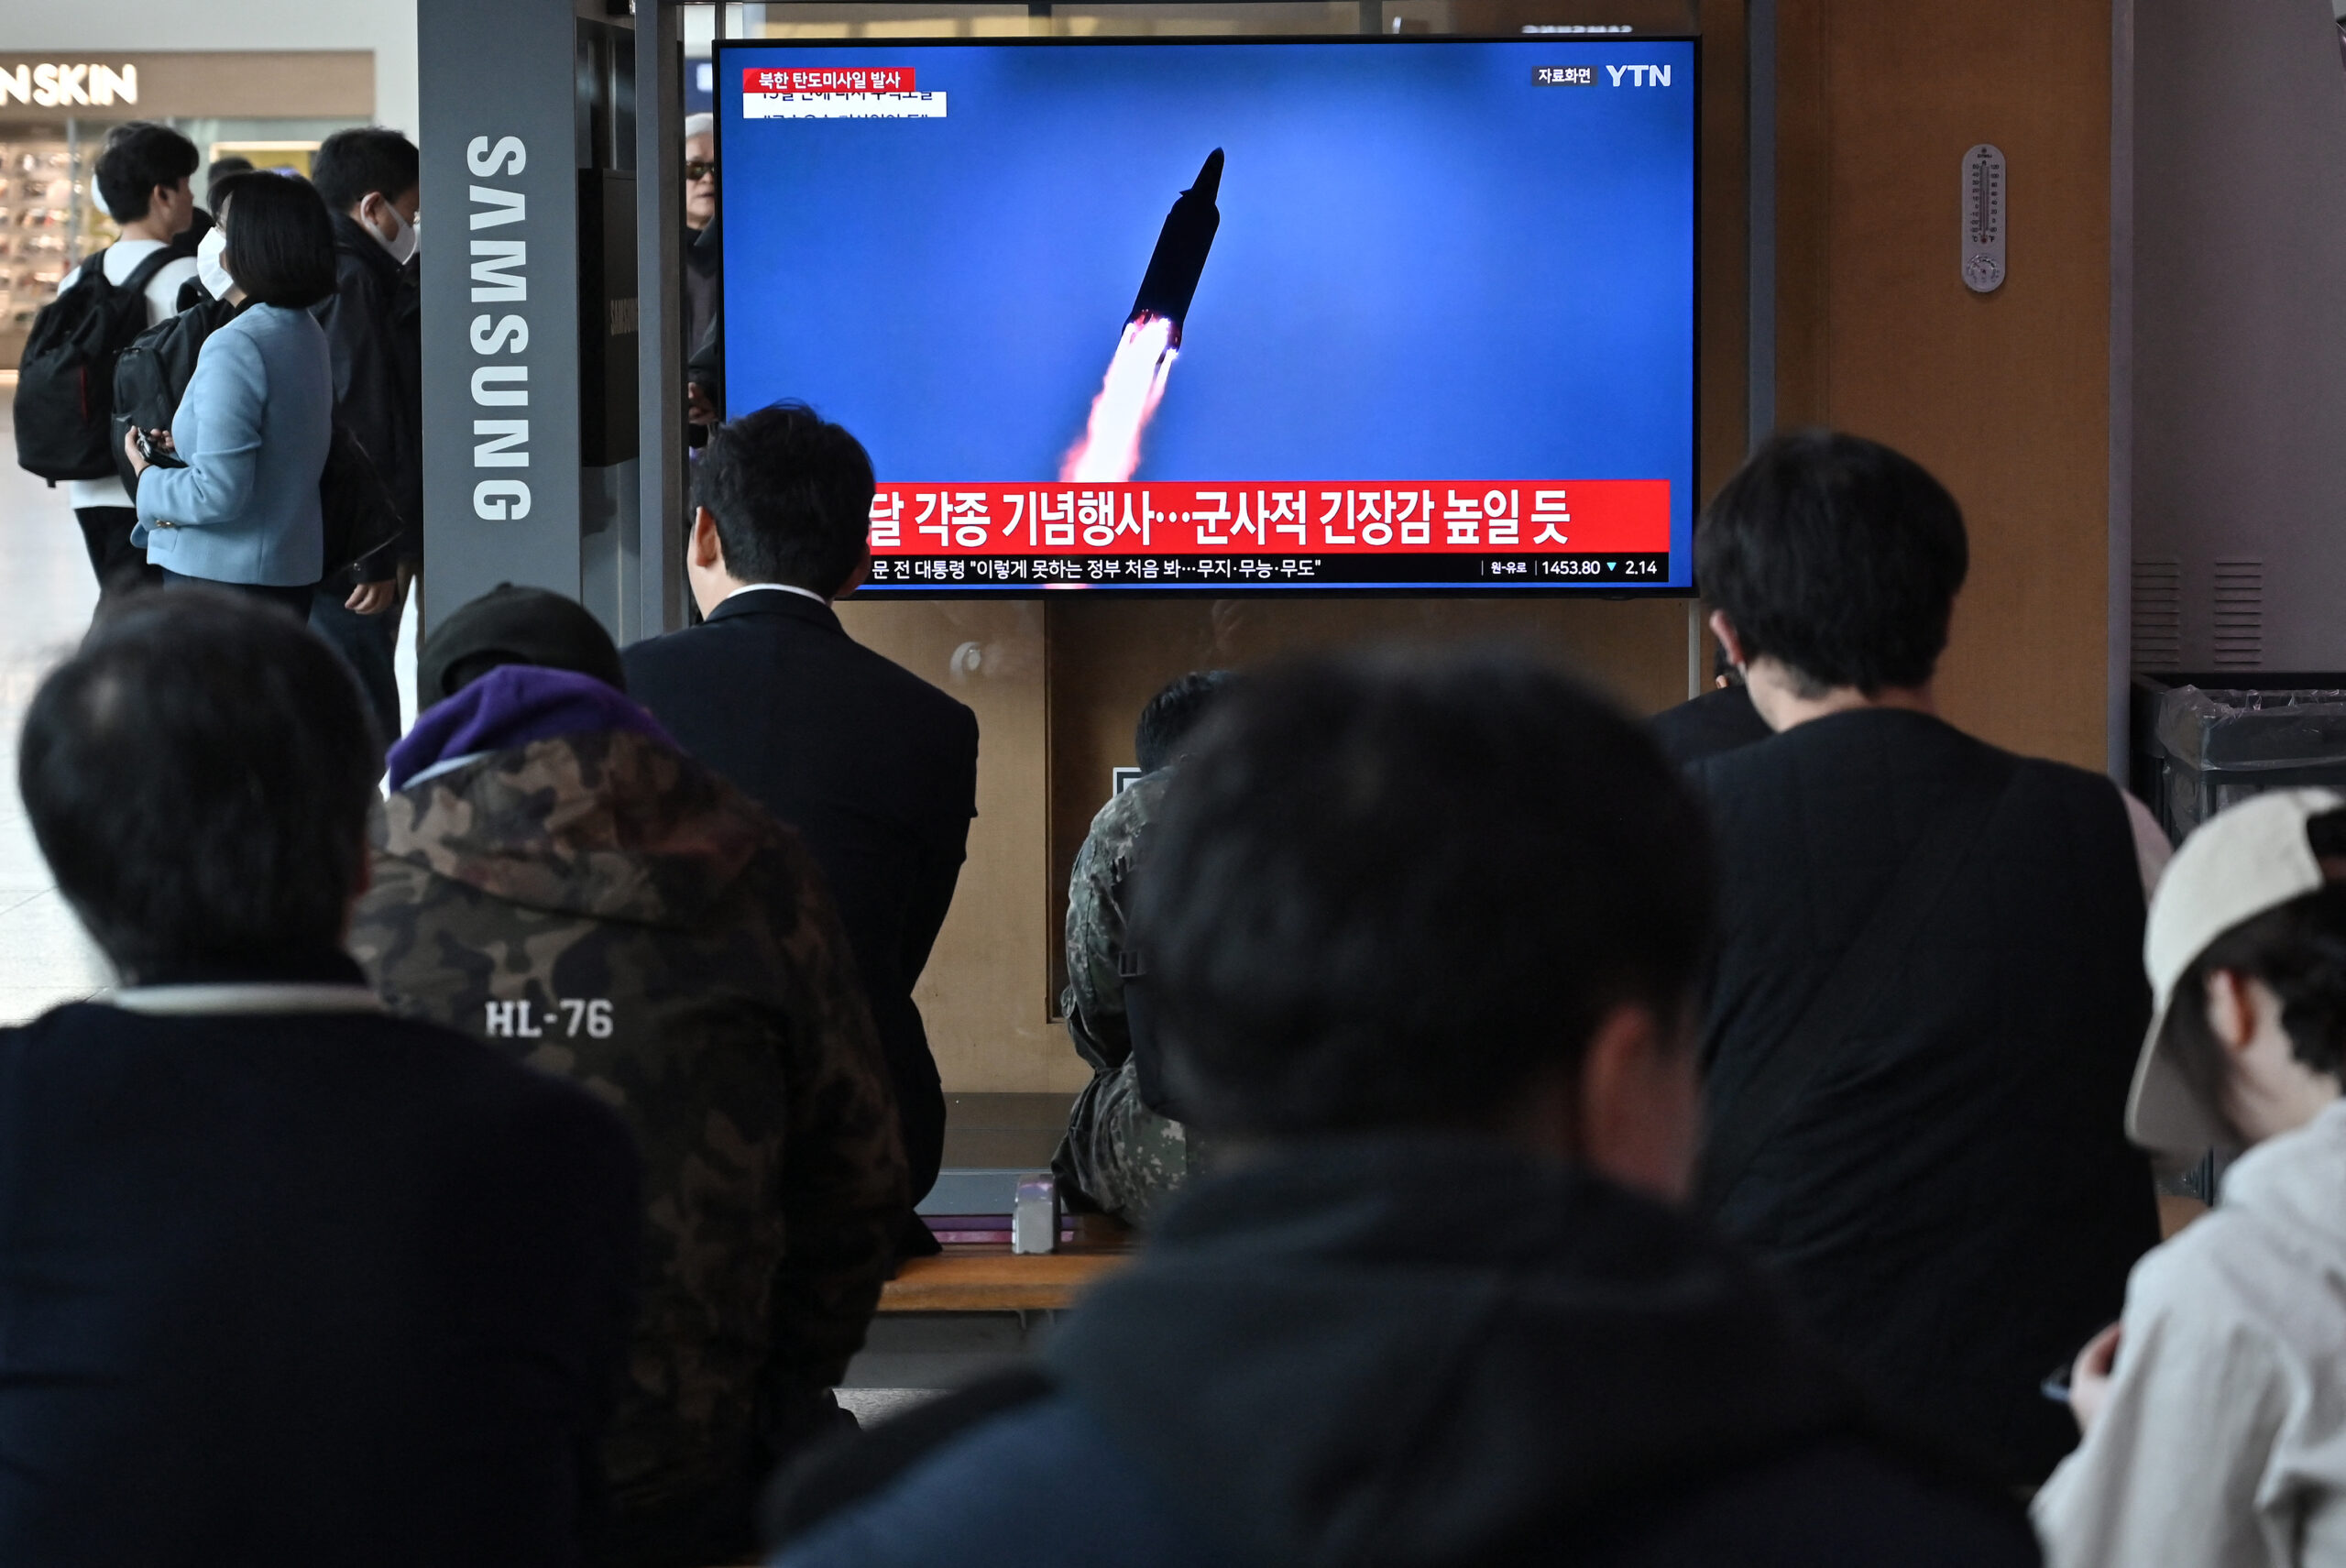 North Korea's Kim Jong Un oversees 'nuclear counterattack' drill